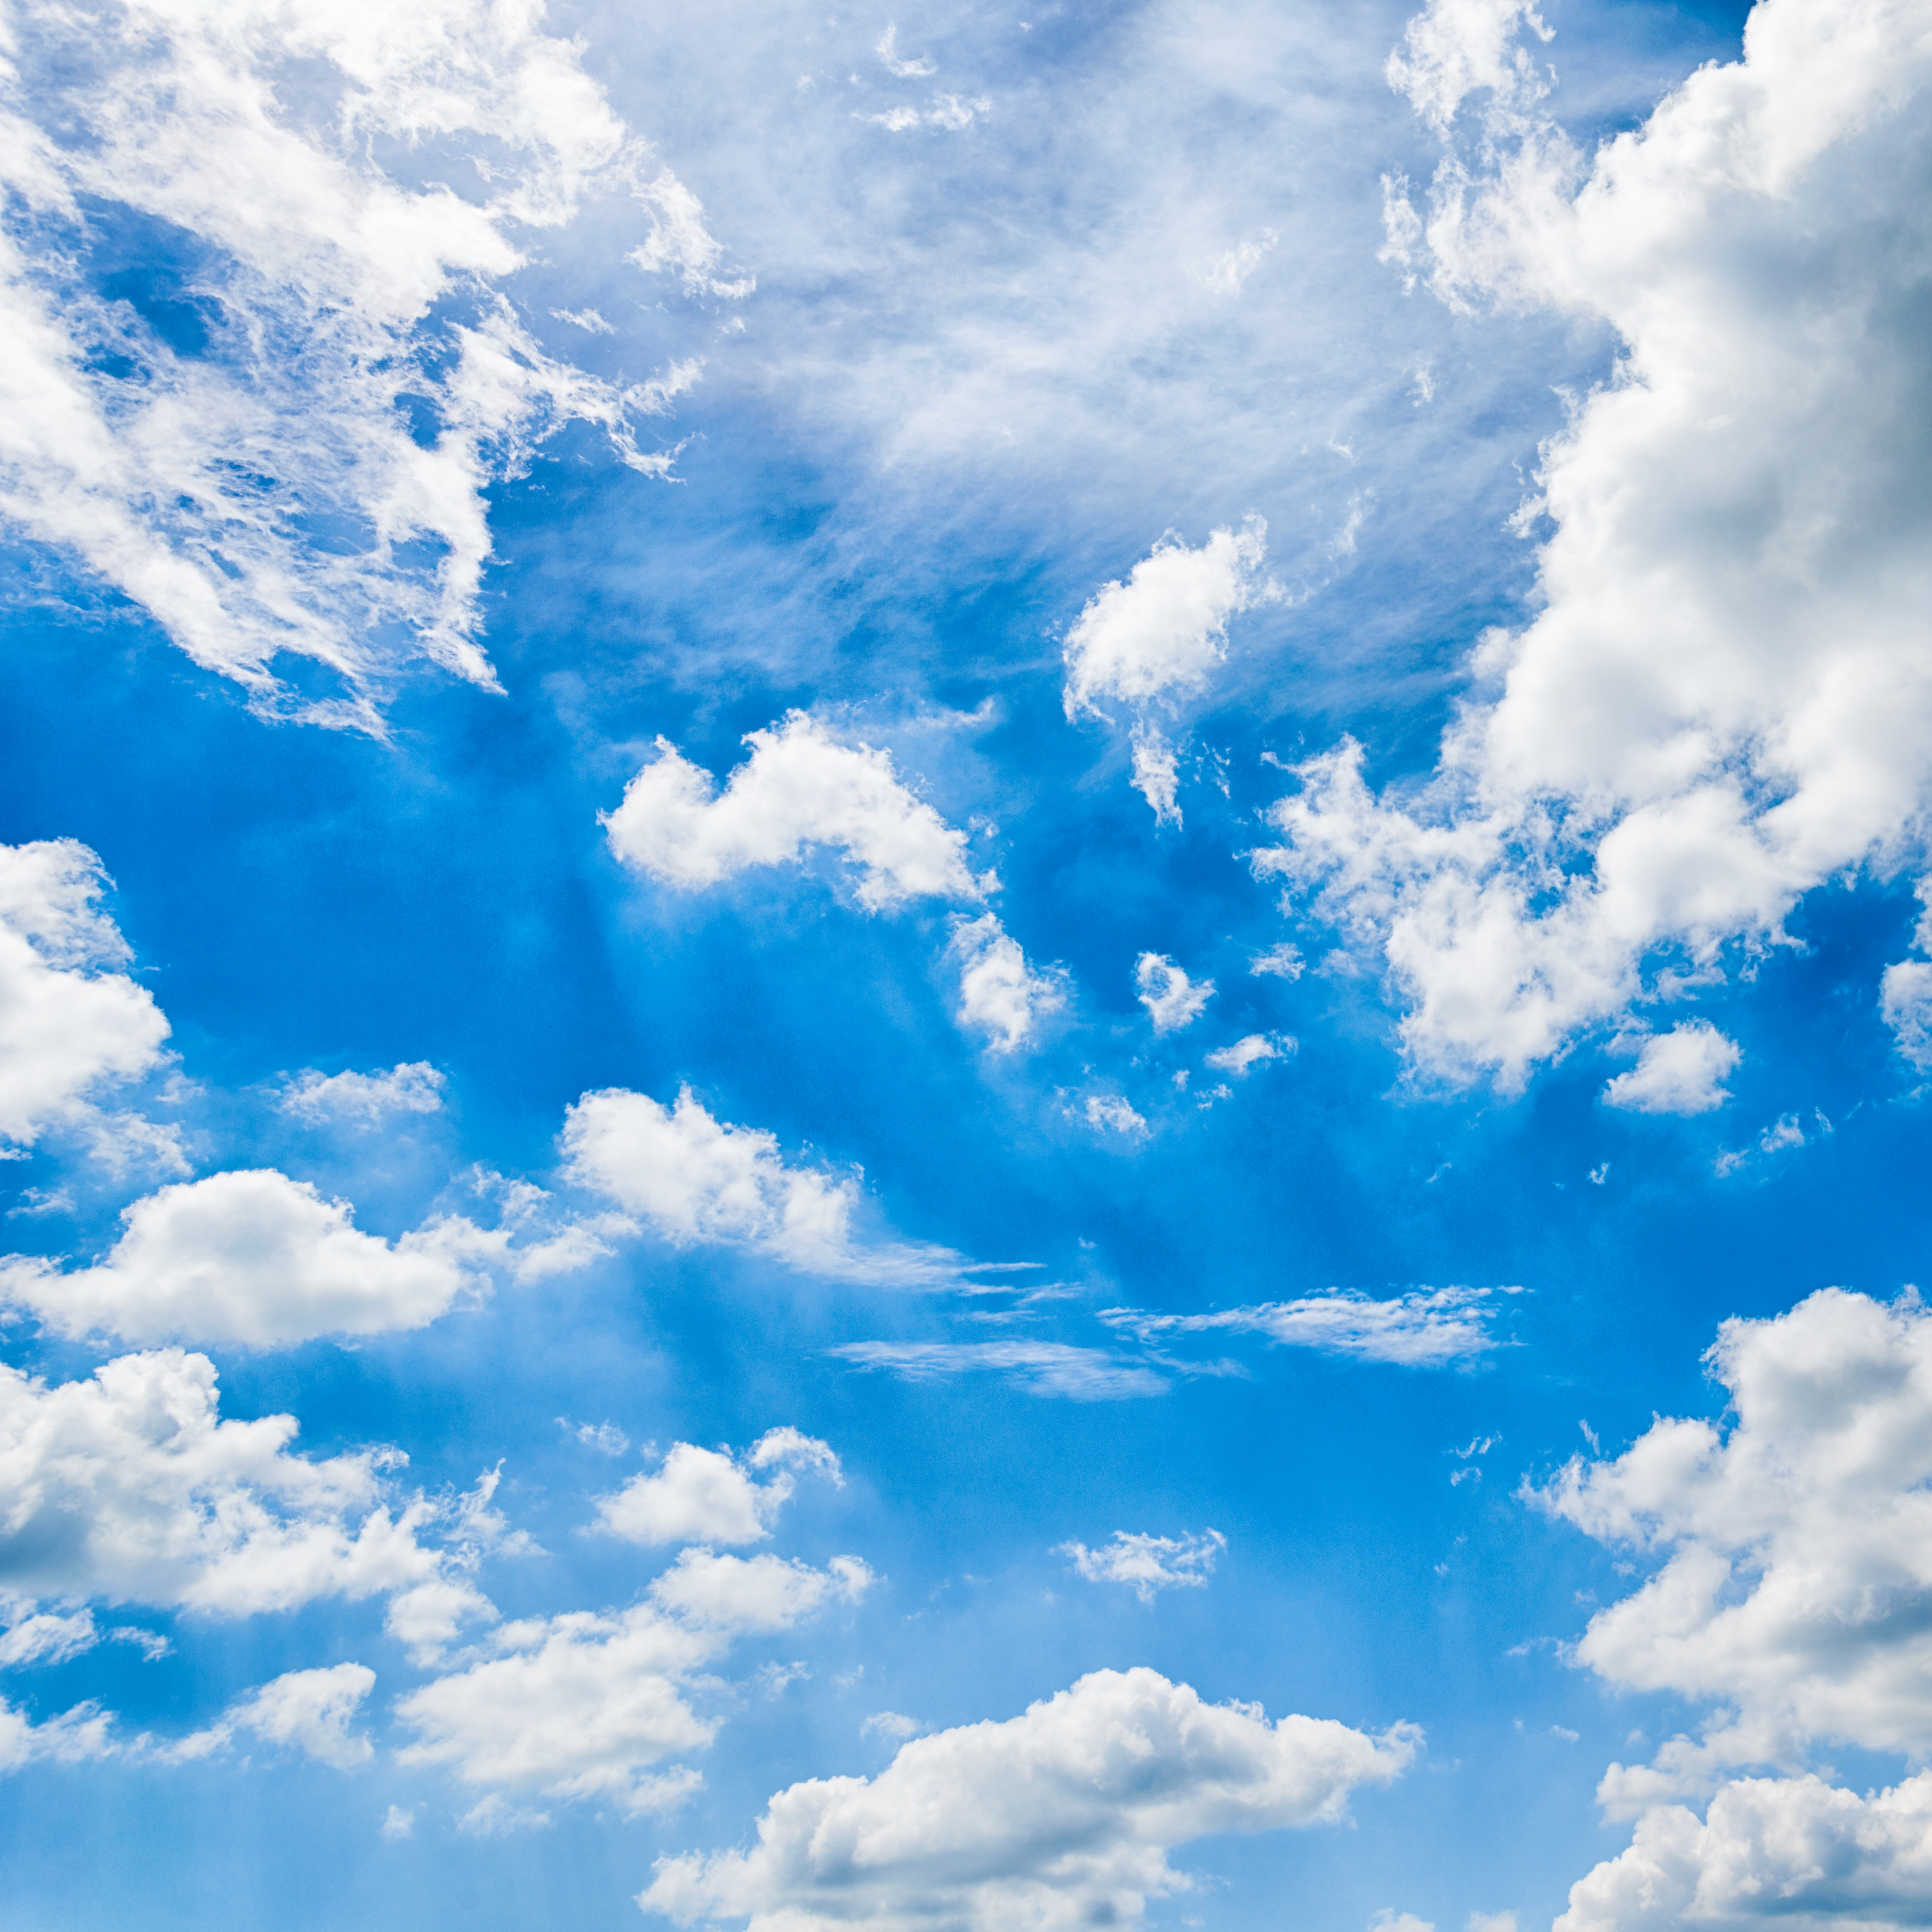 Những đám mây bồng bềnh trên bầu trời xanh thật là đẹp! Hãy cùng ngắm nhìn hình ảnh để tận hưởng tình cảm êm đềm và suy ngẫm trong khoảnh khắc yên bình này.